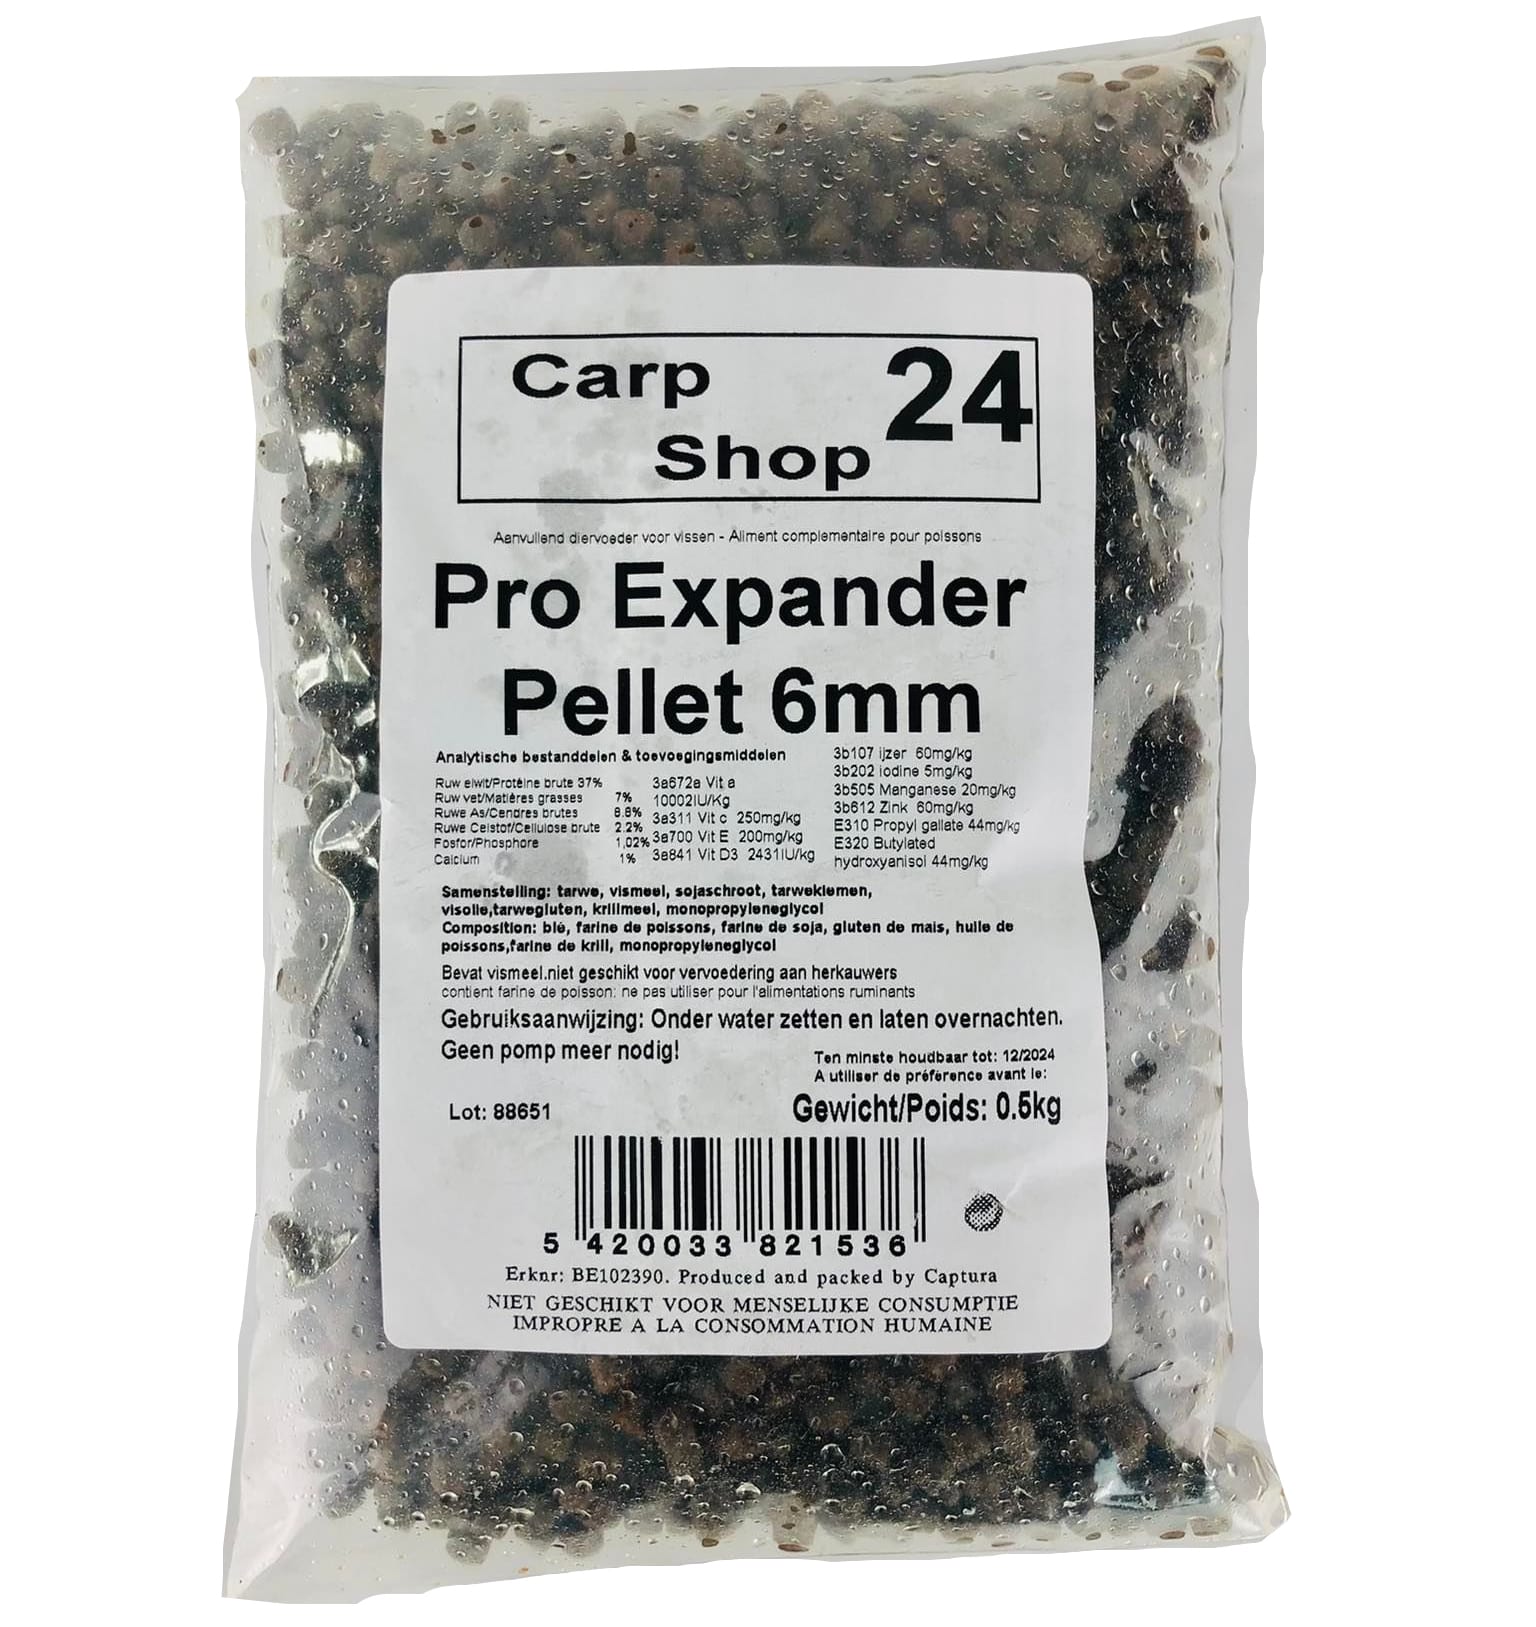 Carpshop24 Pro Expander pellets 6mm